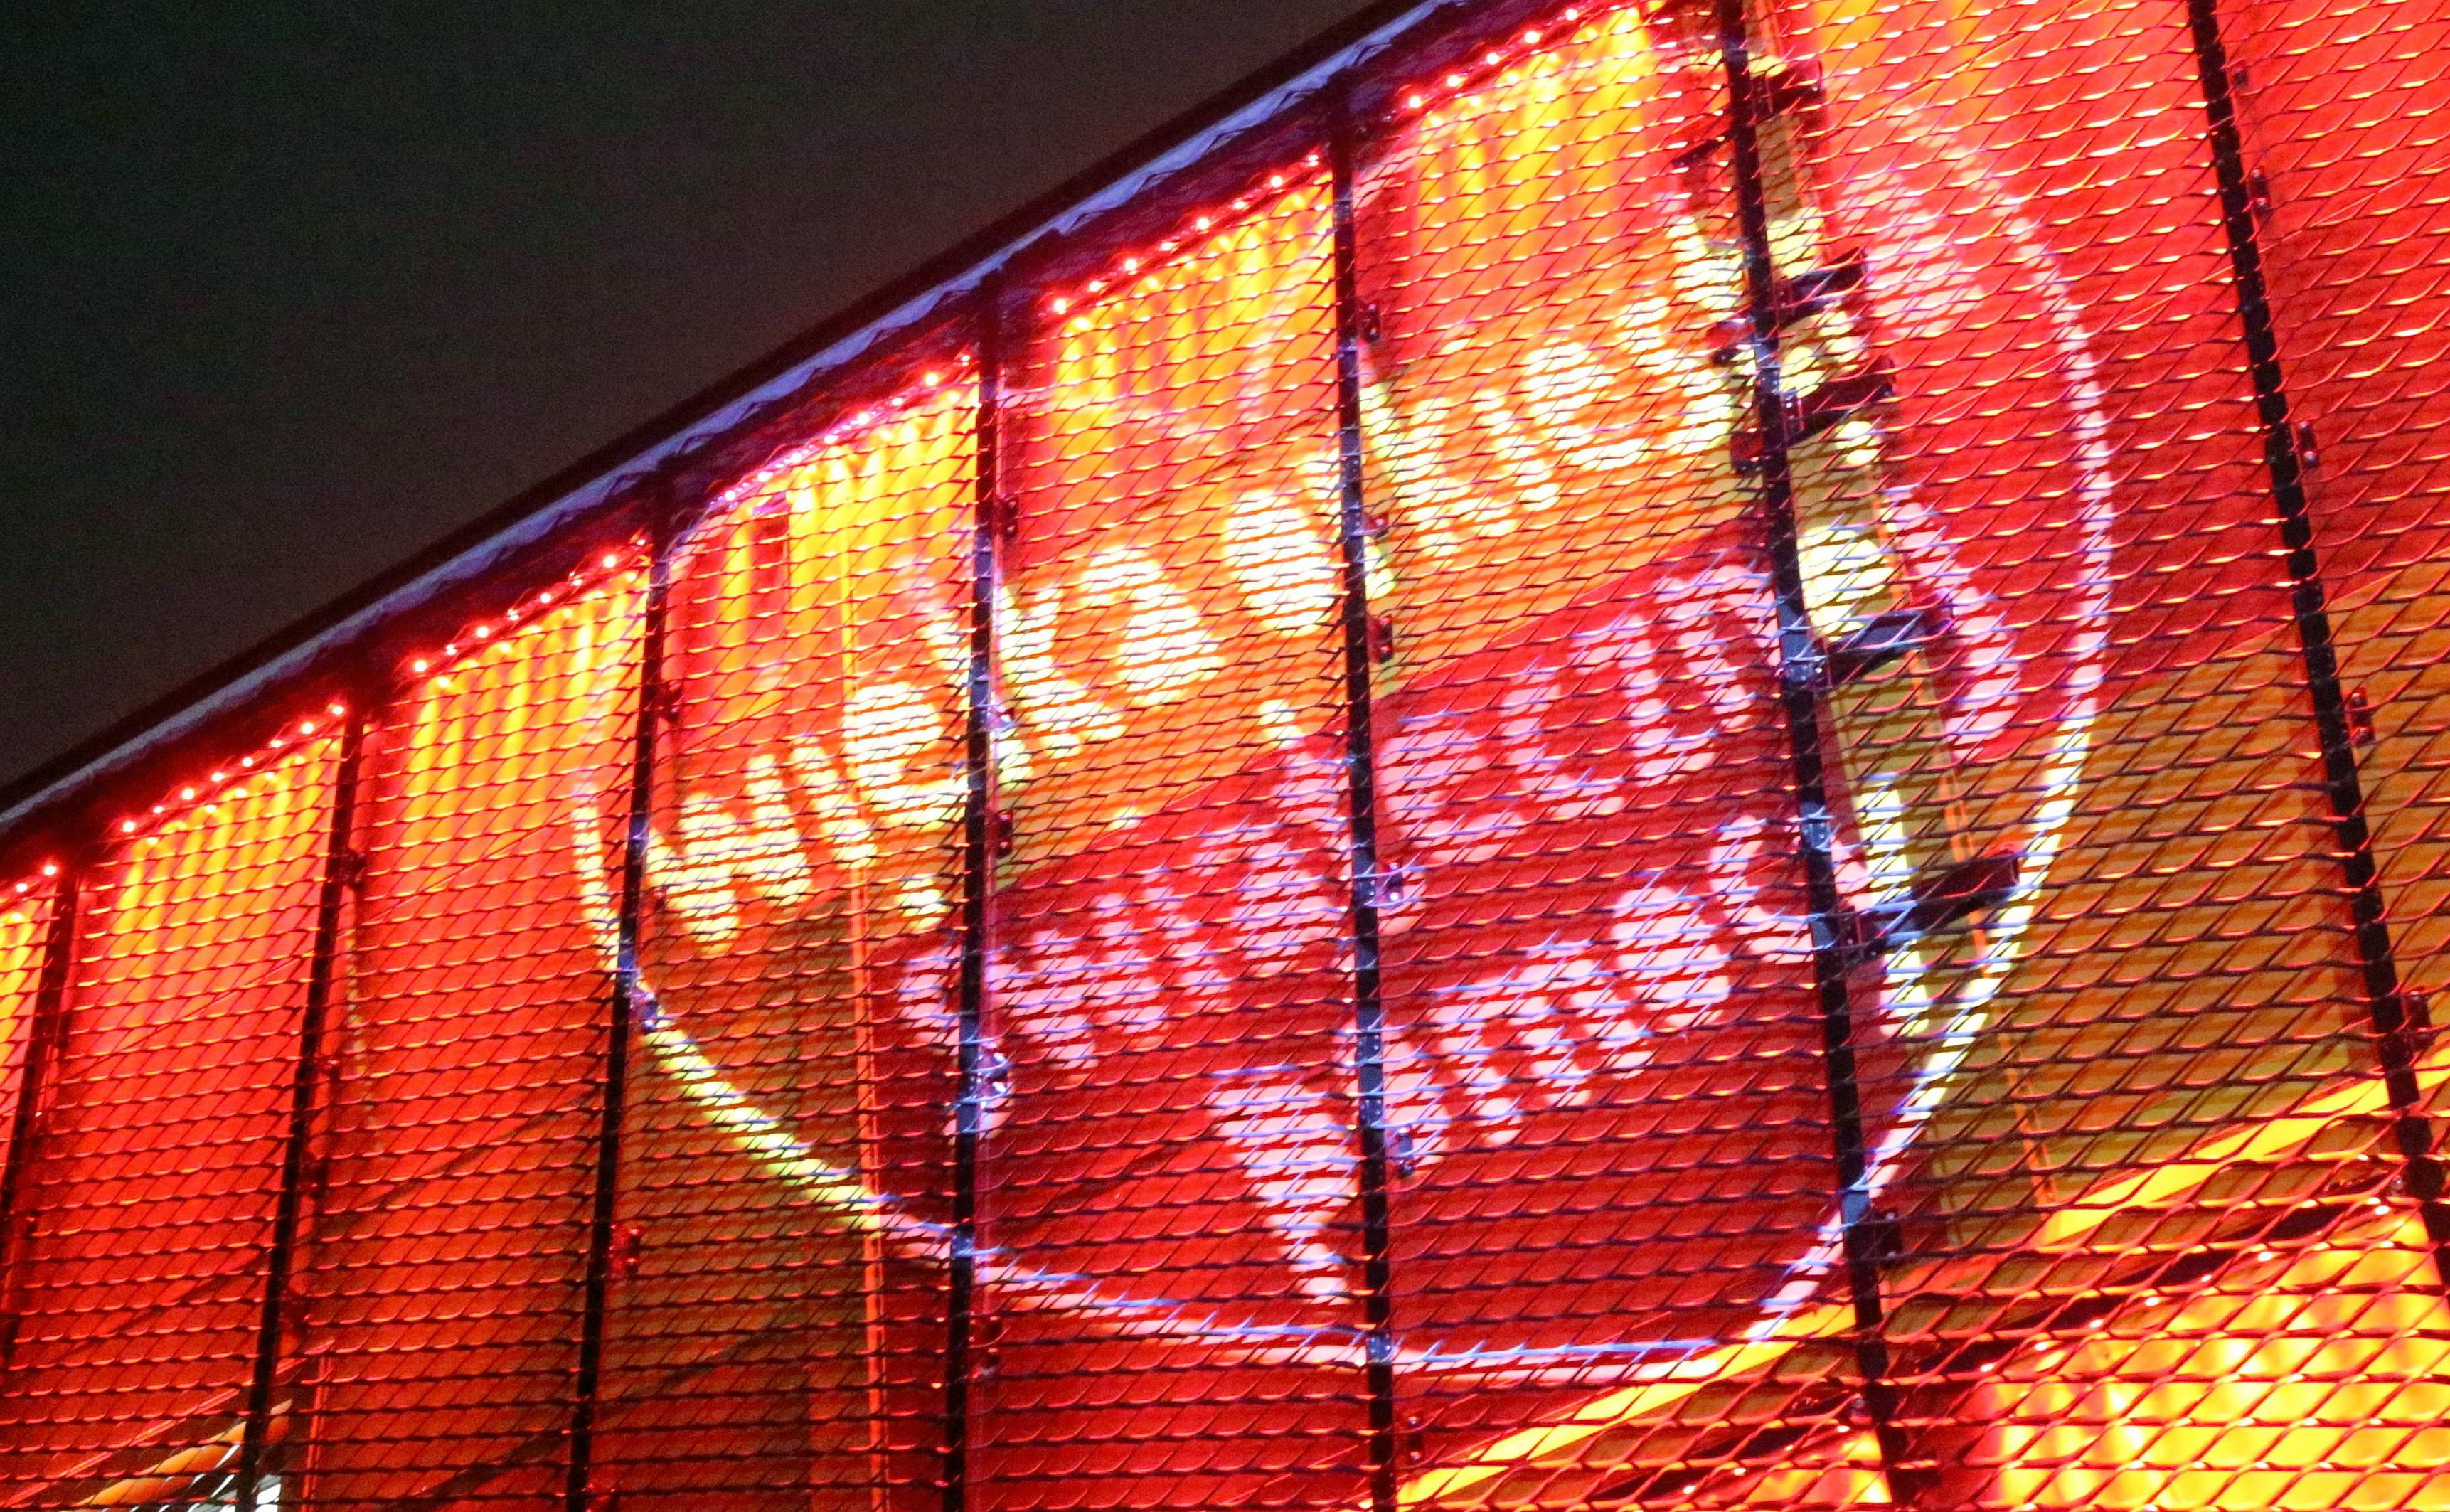 fasada budynku z kolorowym swietlny symbolem serca i napisem Wielka Orkiestra Świątecznej pomocy